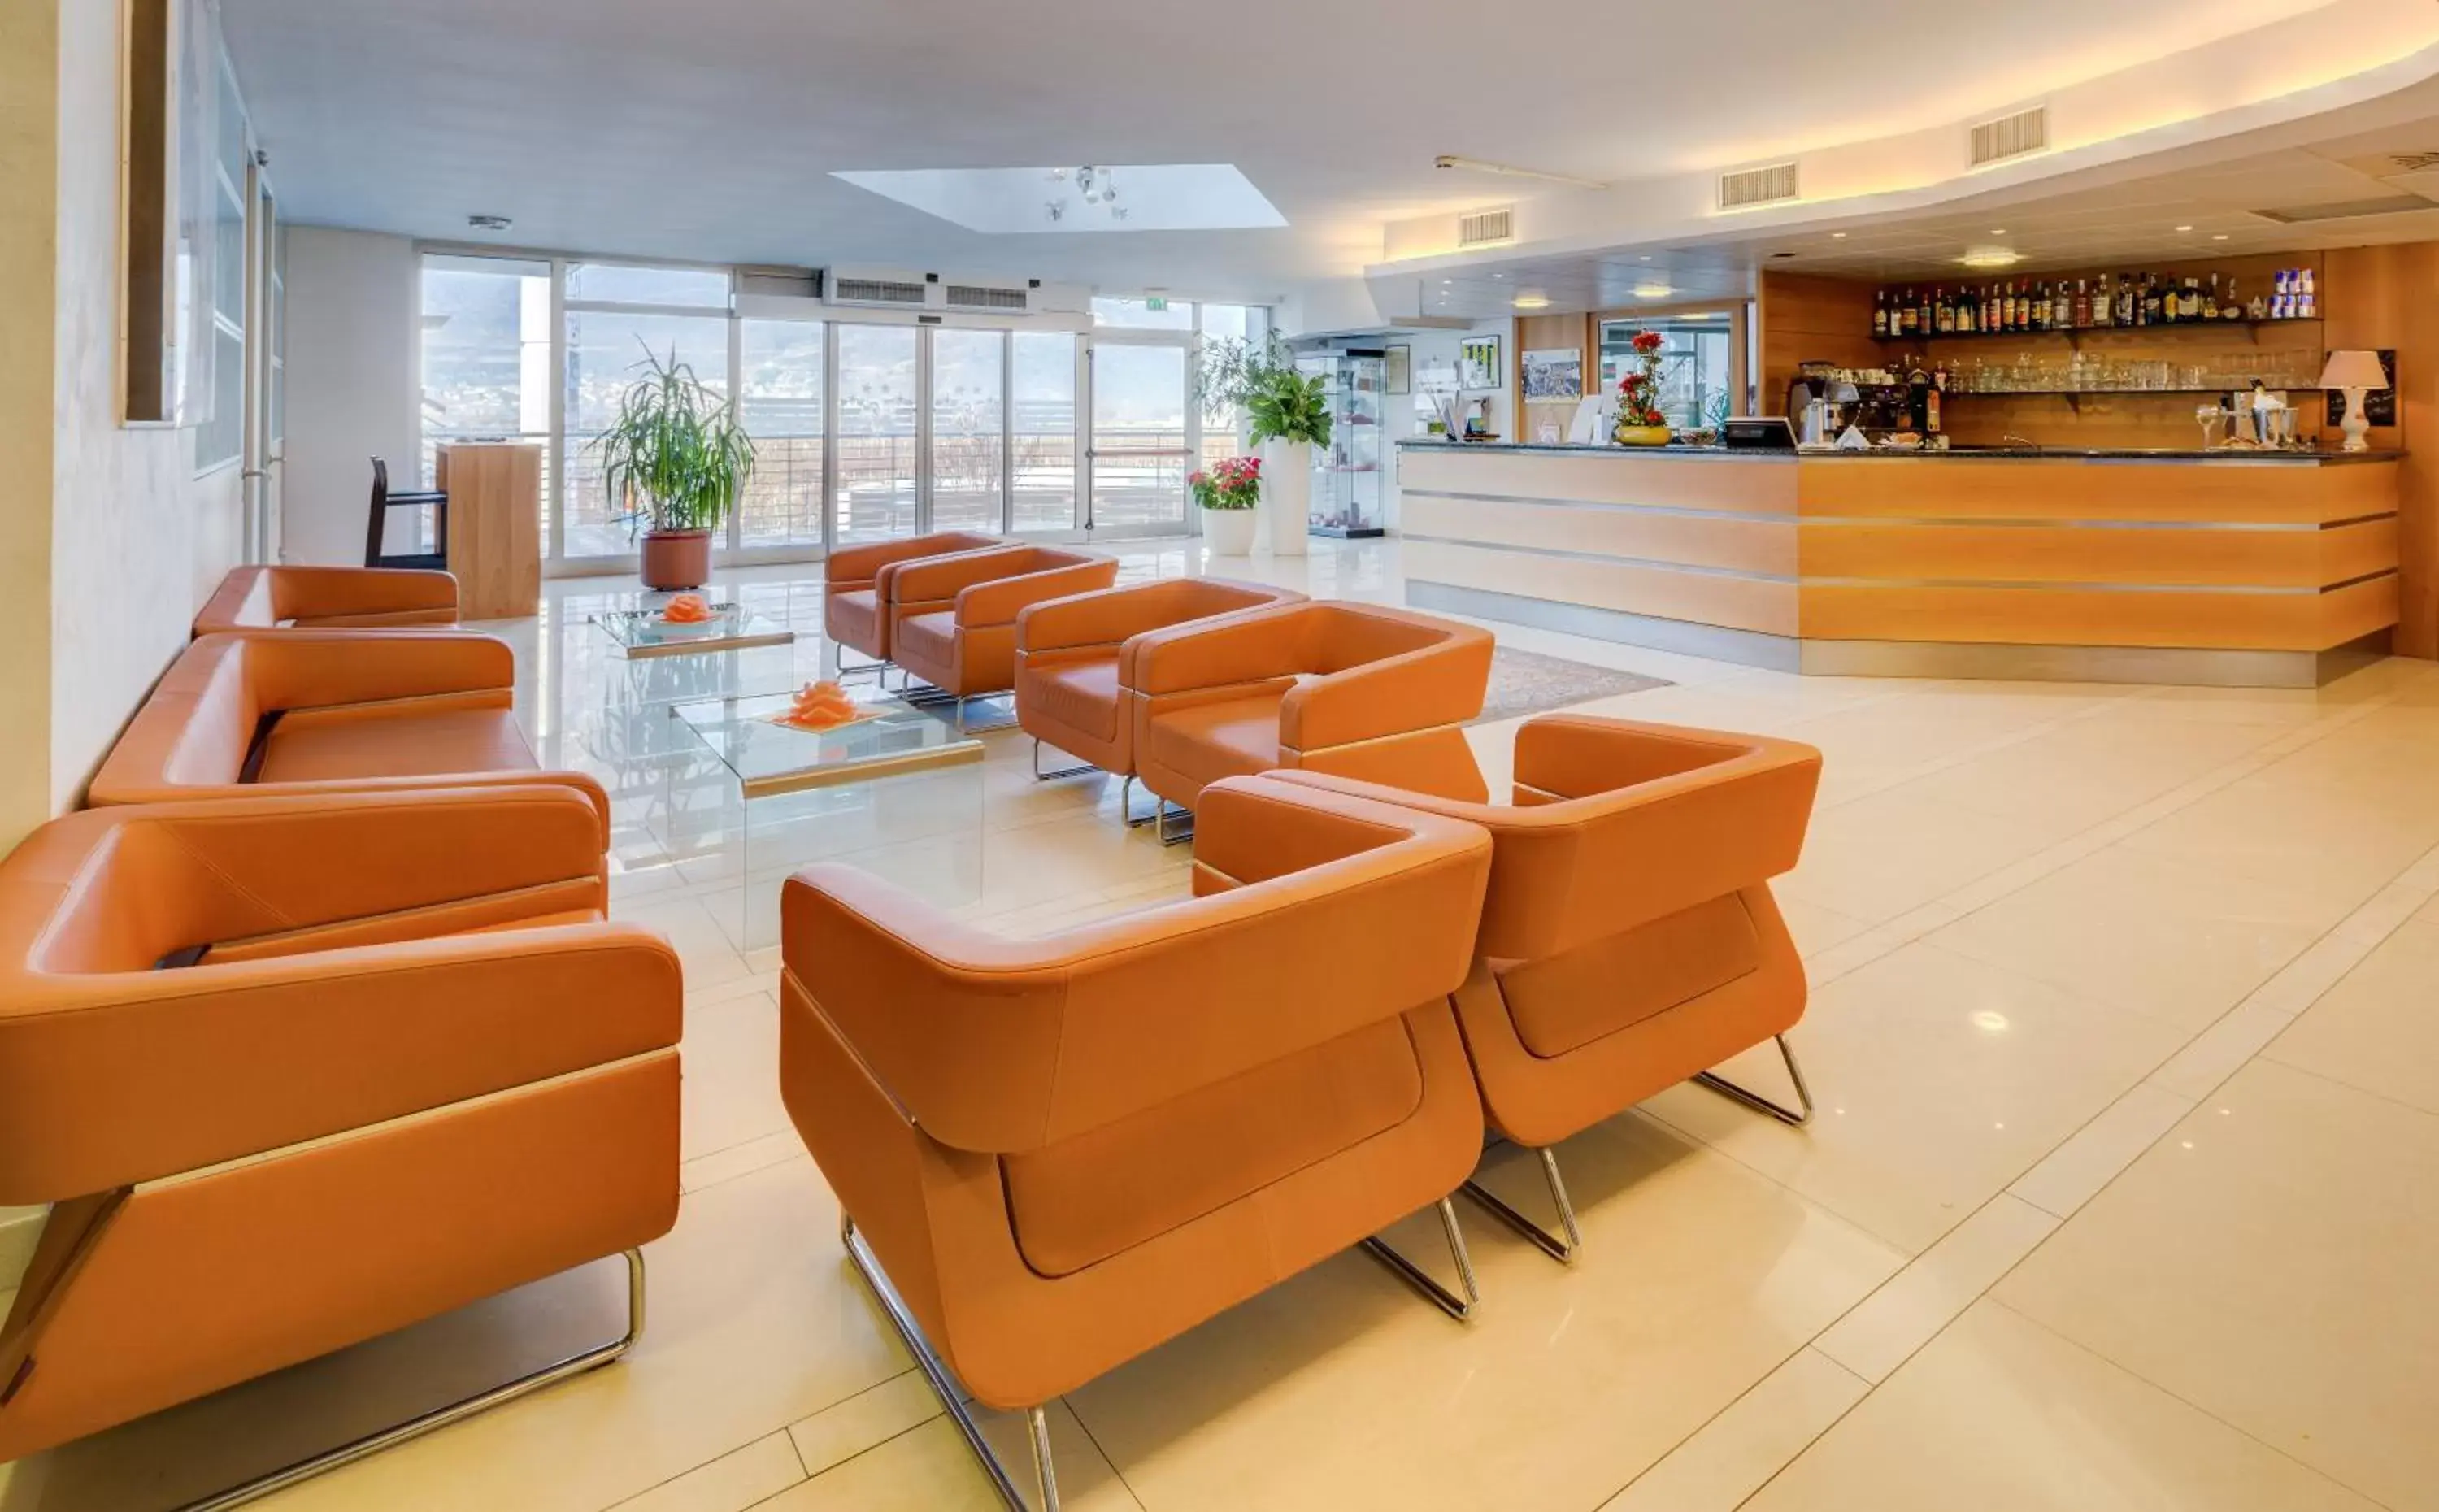 Lobby or reception, Lobby/Reception in Best Western Hotel Adige